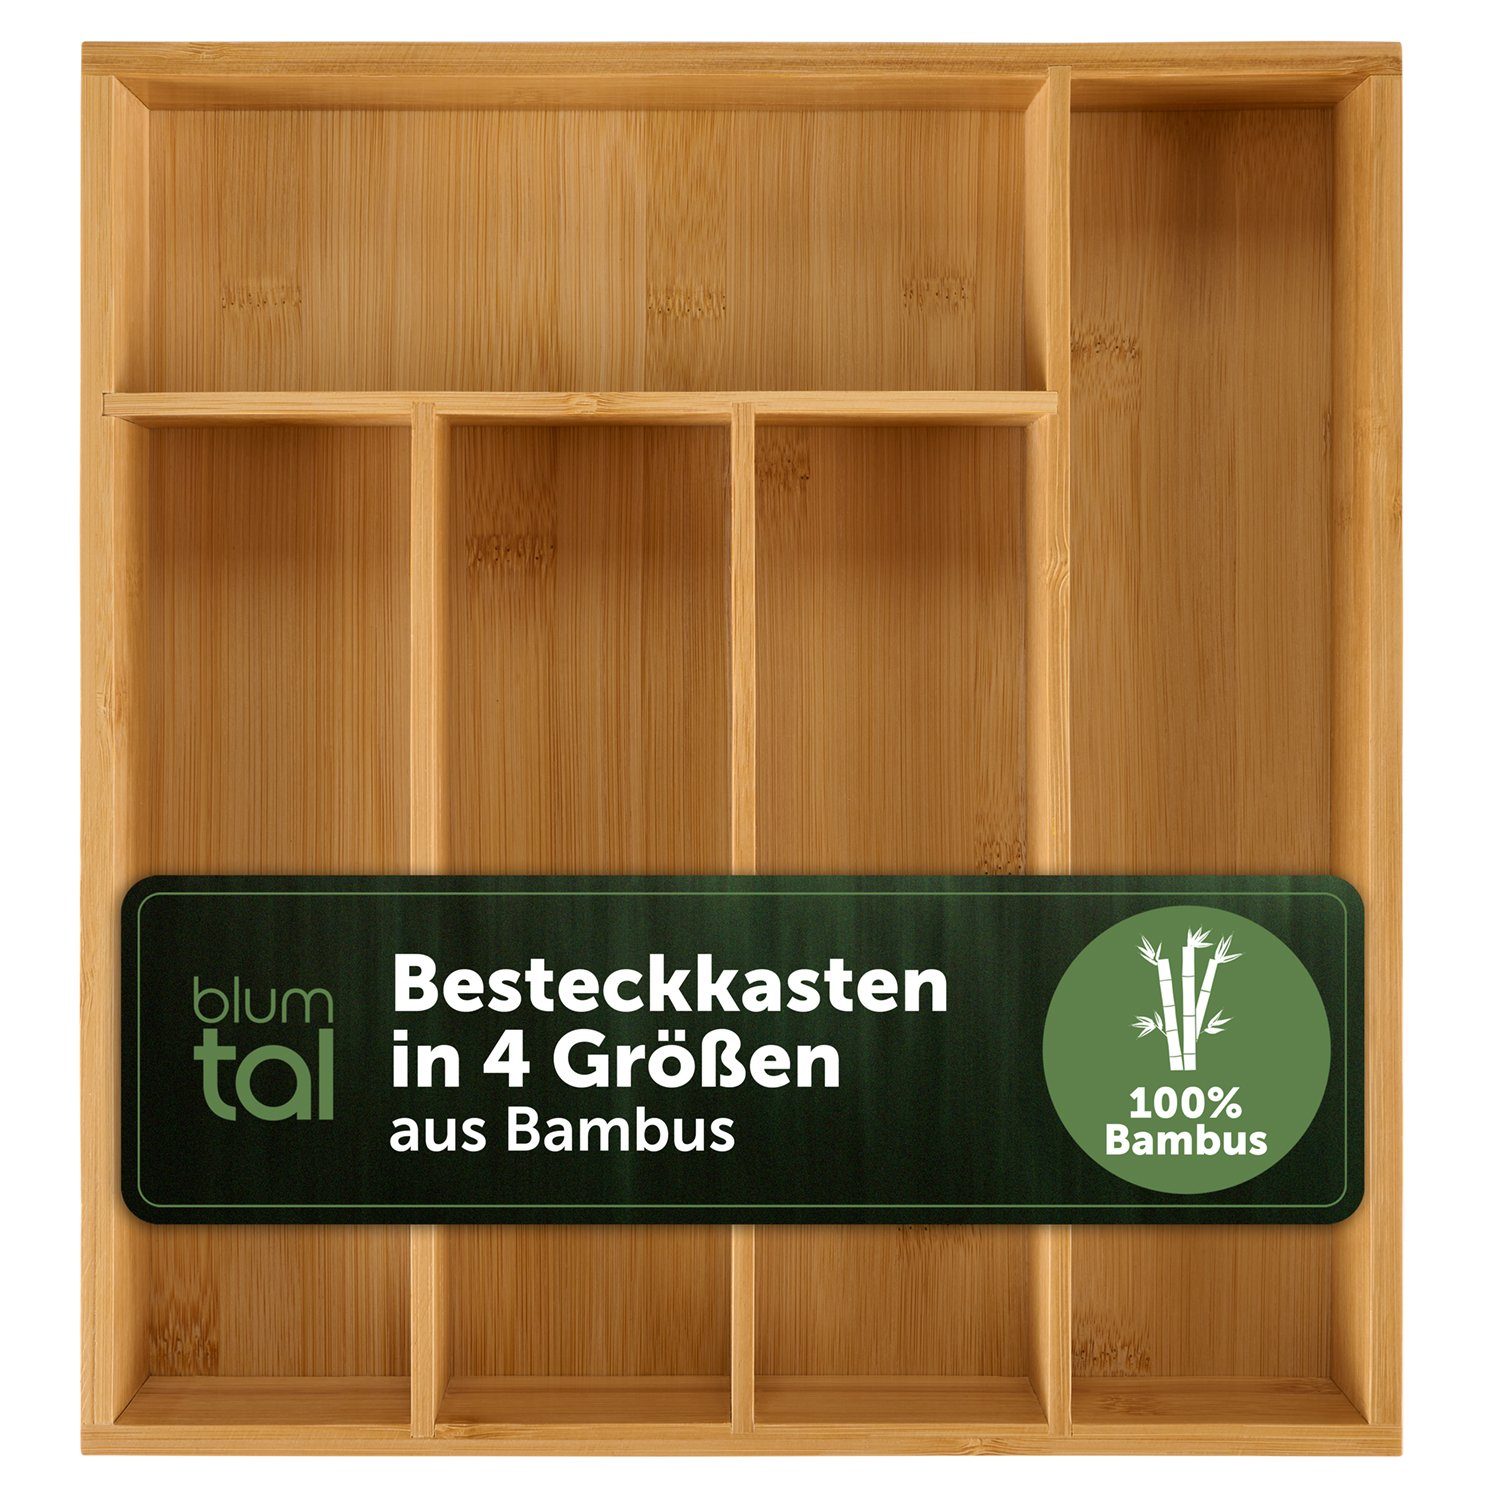 Blumtal Besteckkasten Küchenschubladen Einlagen - Bambus Besteckkasten für Schubladen (mit 4 oder 5 Fächern als Organizer für Besteck und Haushaltsartikel), leicht abwischbar, Besteckeinsatz passend für IKEA Maximera